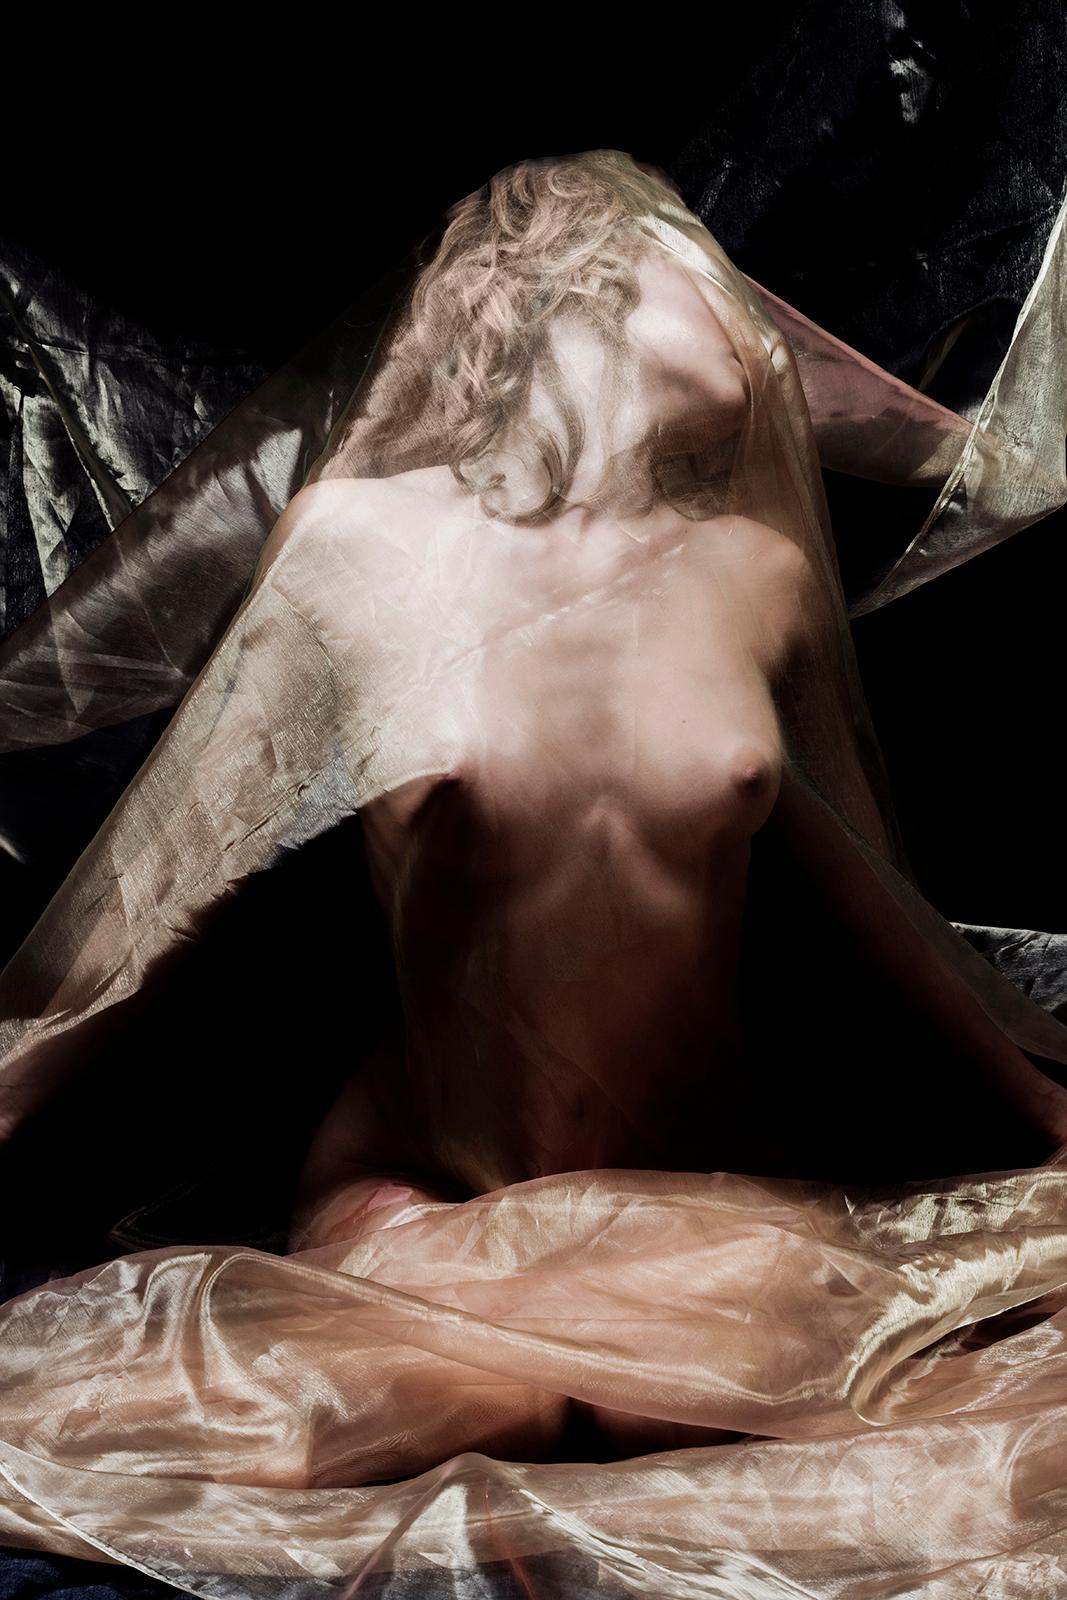 rêve en organza - Impression d'œuvres d'art sensuelles en édition limitée signée, modèle semi nu